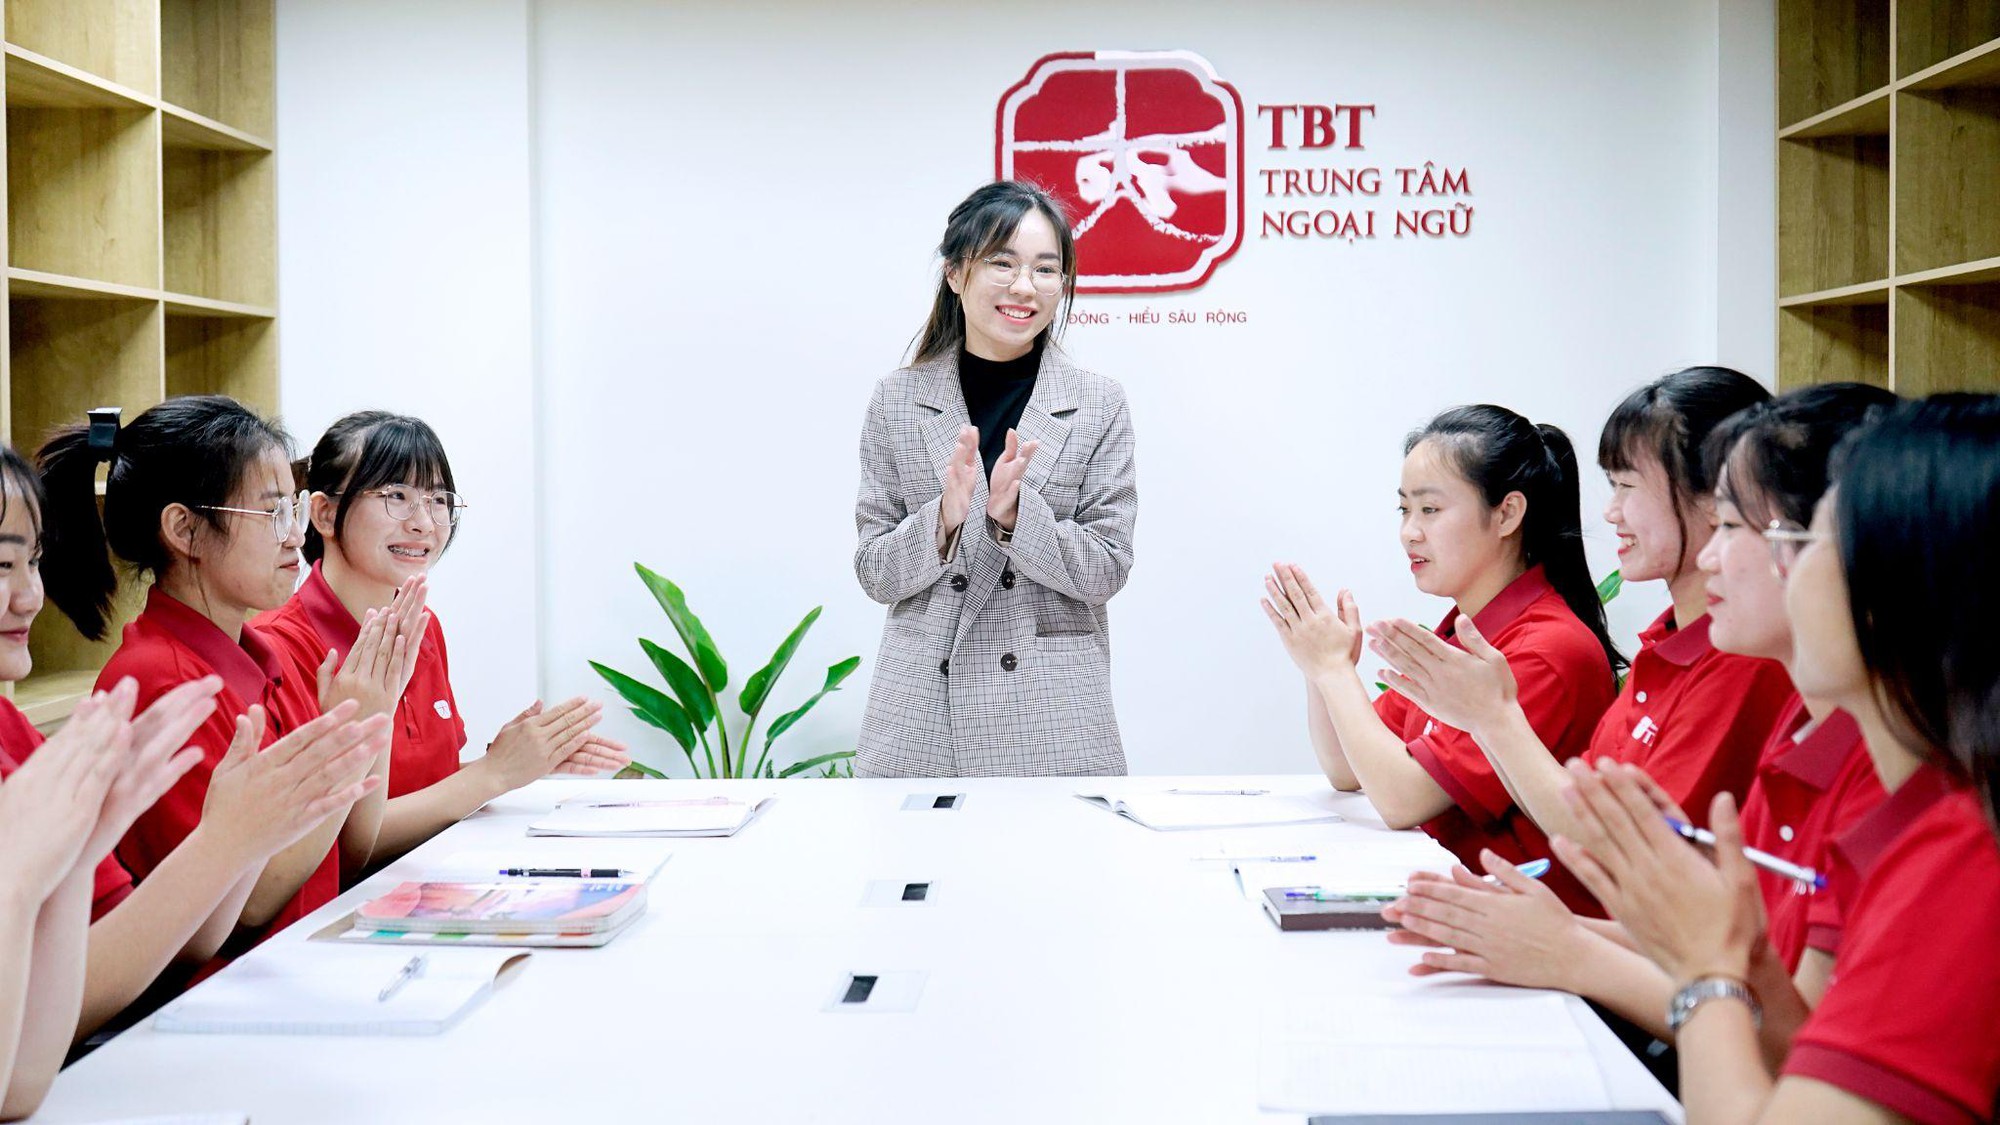 Tiếng Trung TBT - Top trung tâm uy tín, chất lượng hàng đầu - Ảnh 3.